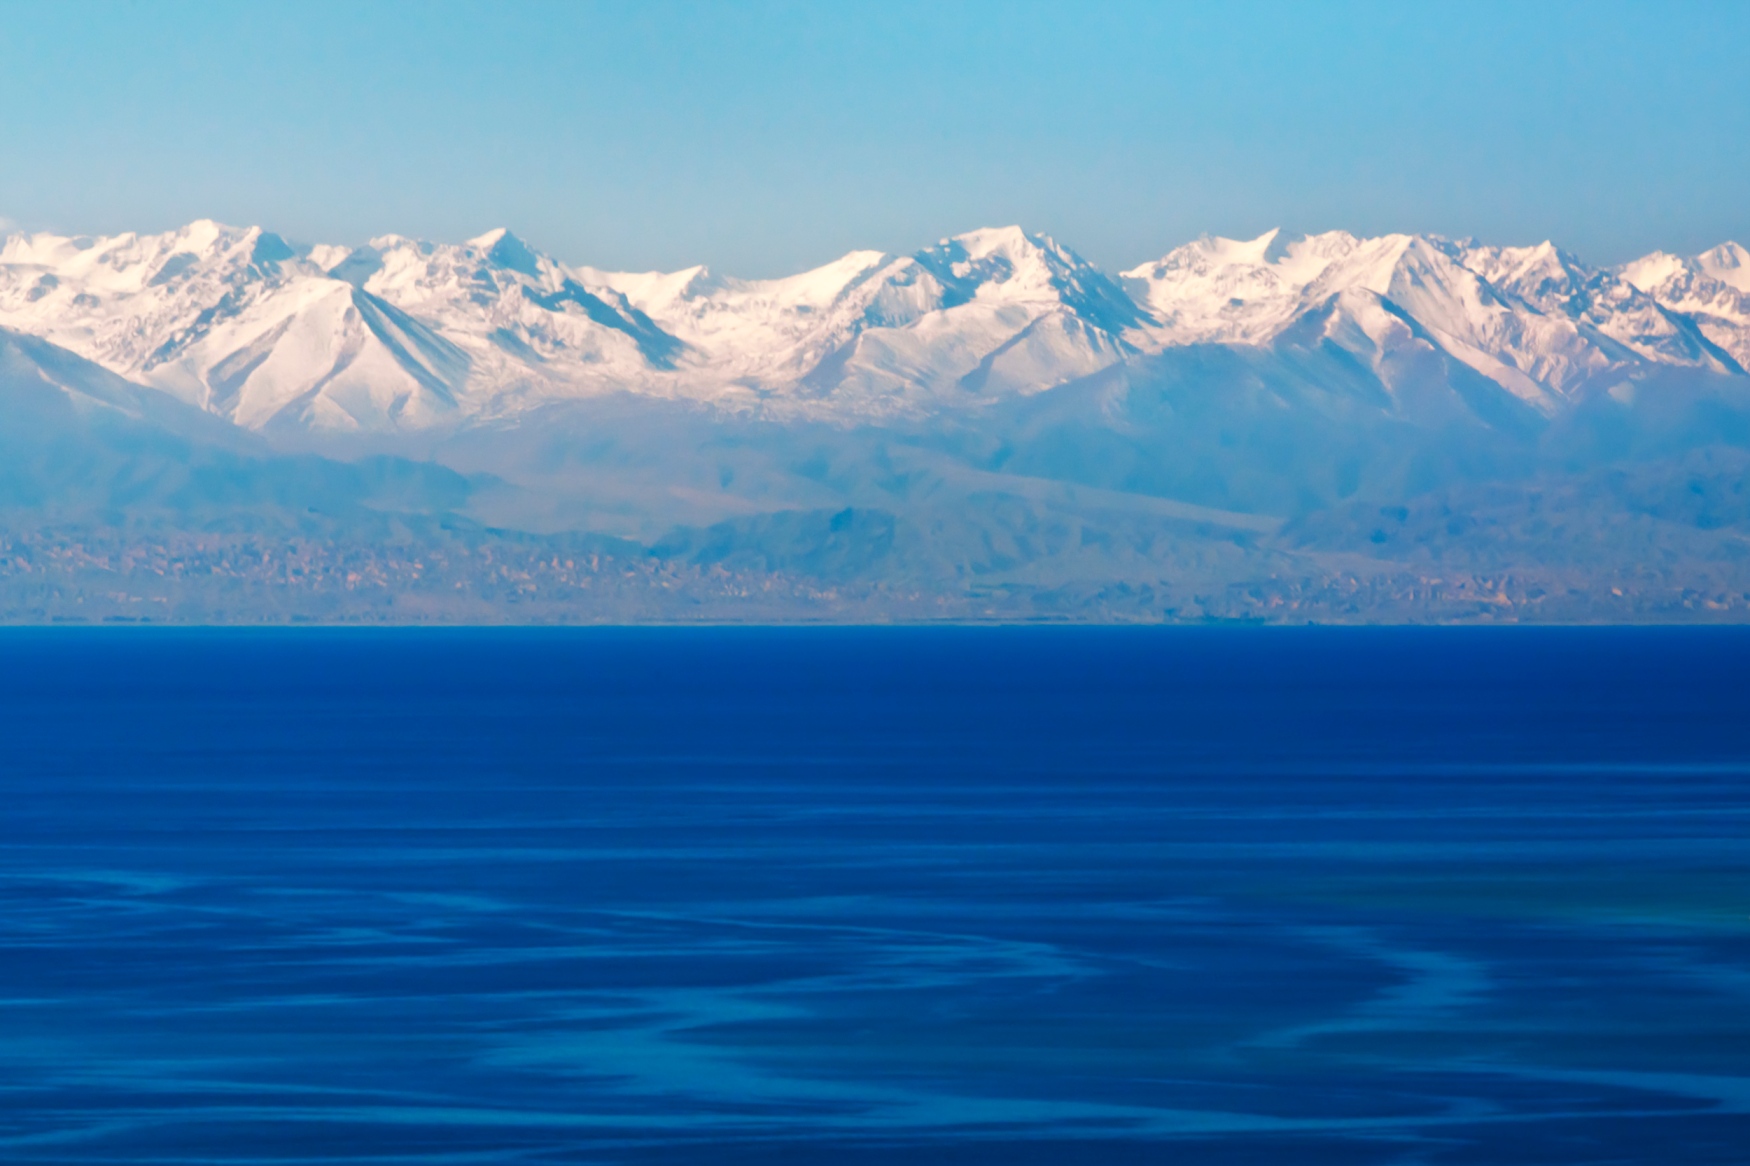 Le lac Issyk-kul, le second plus grand lac alpin du monde.